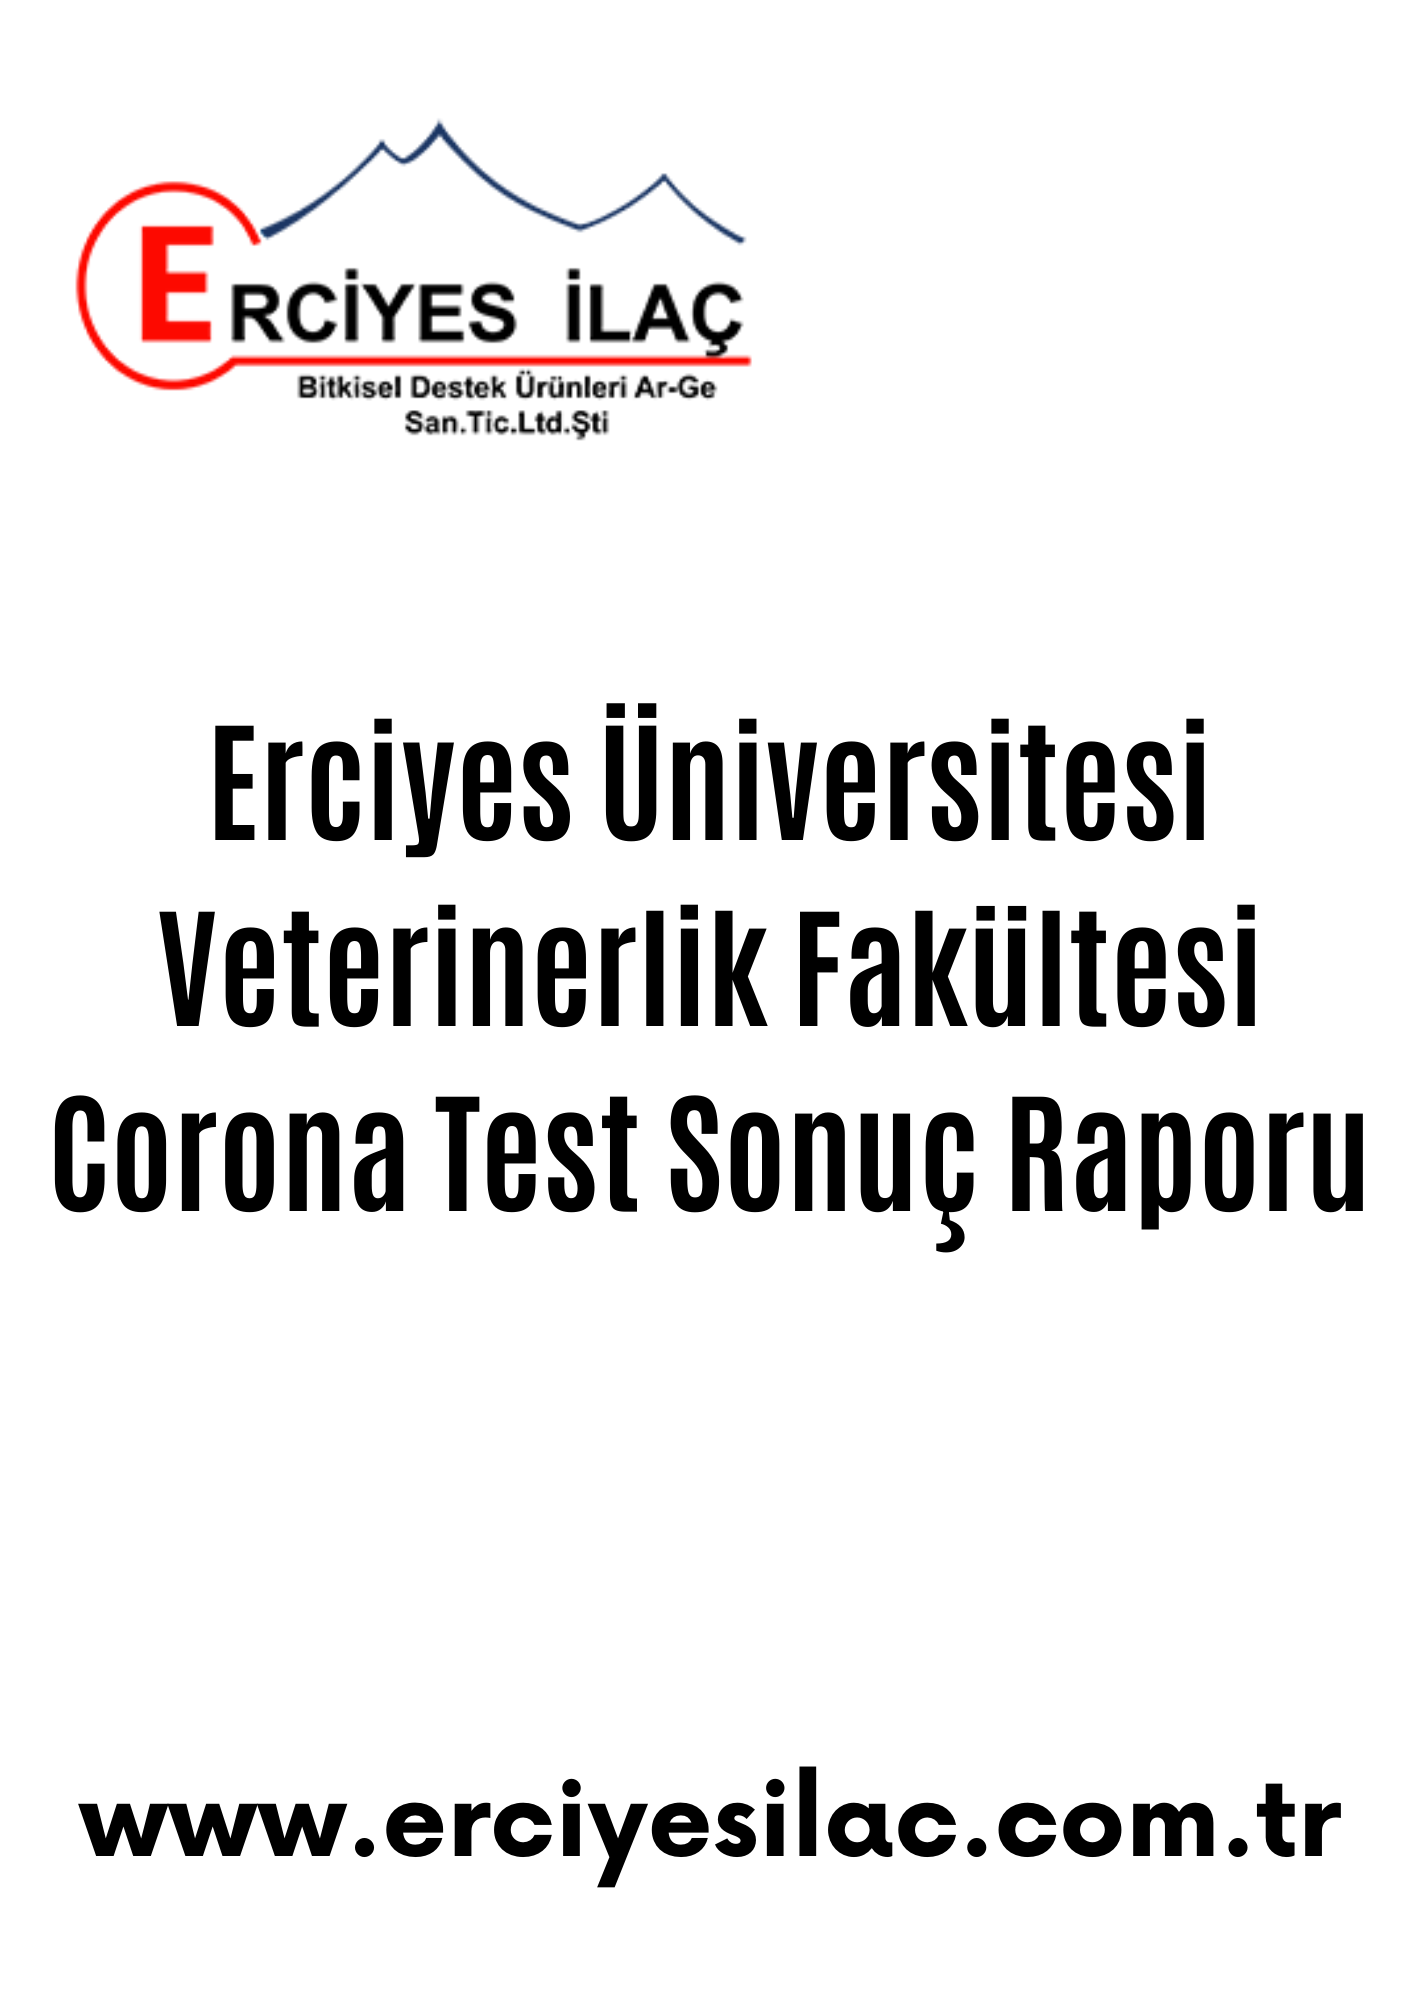 Erciyes Üniversitesi Veterinerlik Fakültesi Corona Test Sonuç Raporu